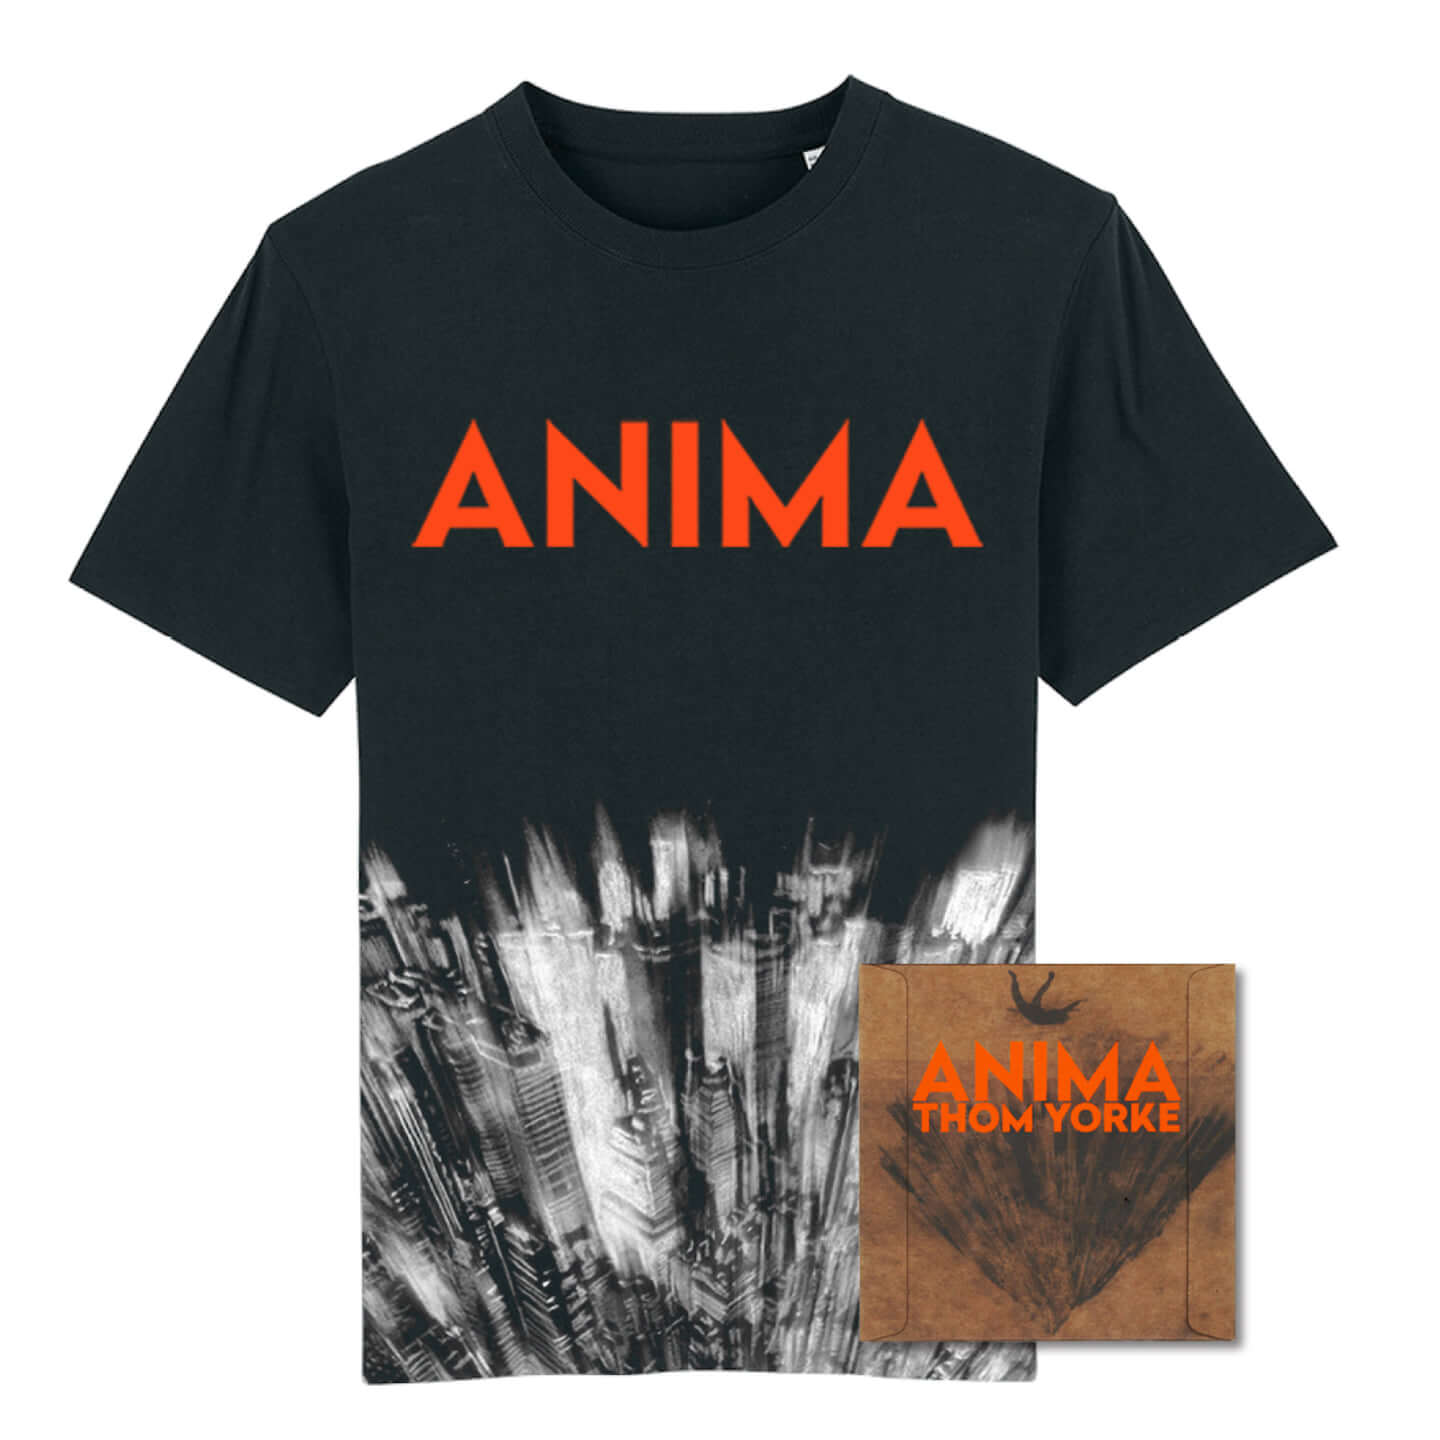 トム・ヨーク、ソロアルバム『ANIMA』配信スタート！数量限定でオリジナルTシャツのセット販売も決定 XL987CDJP_tshirts_bundle-1440x1440